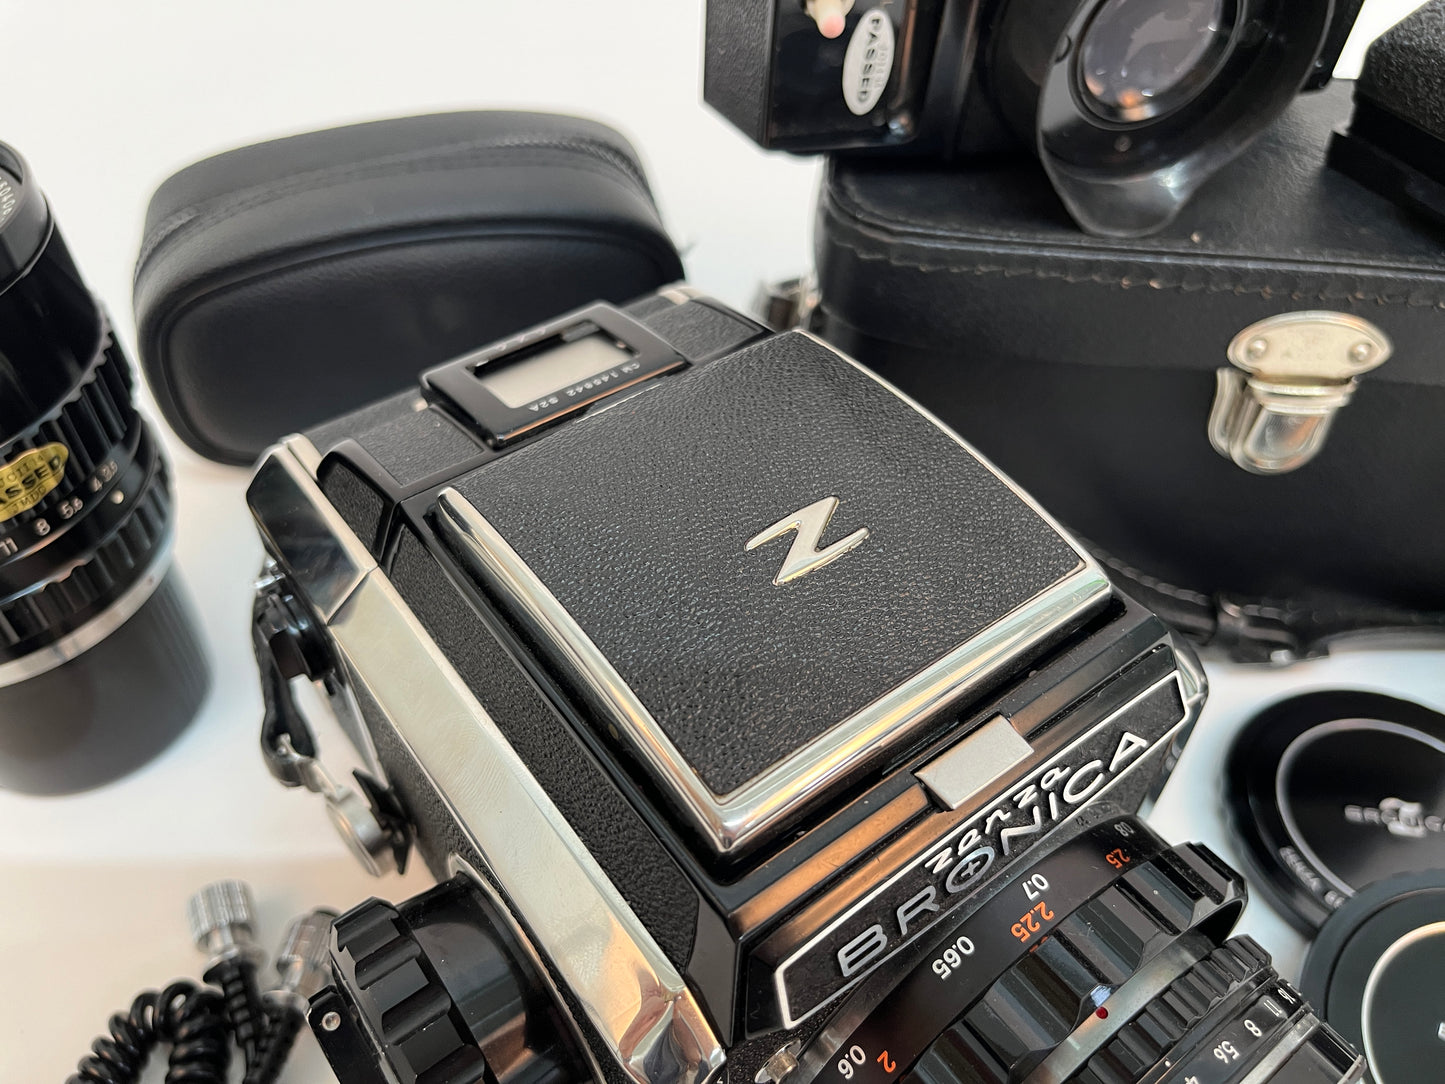 Bronica S2A Medium Format SLR Camera Full Kit MINT